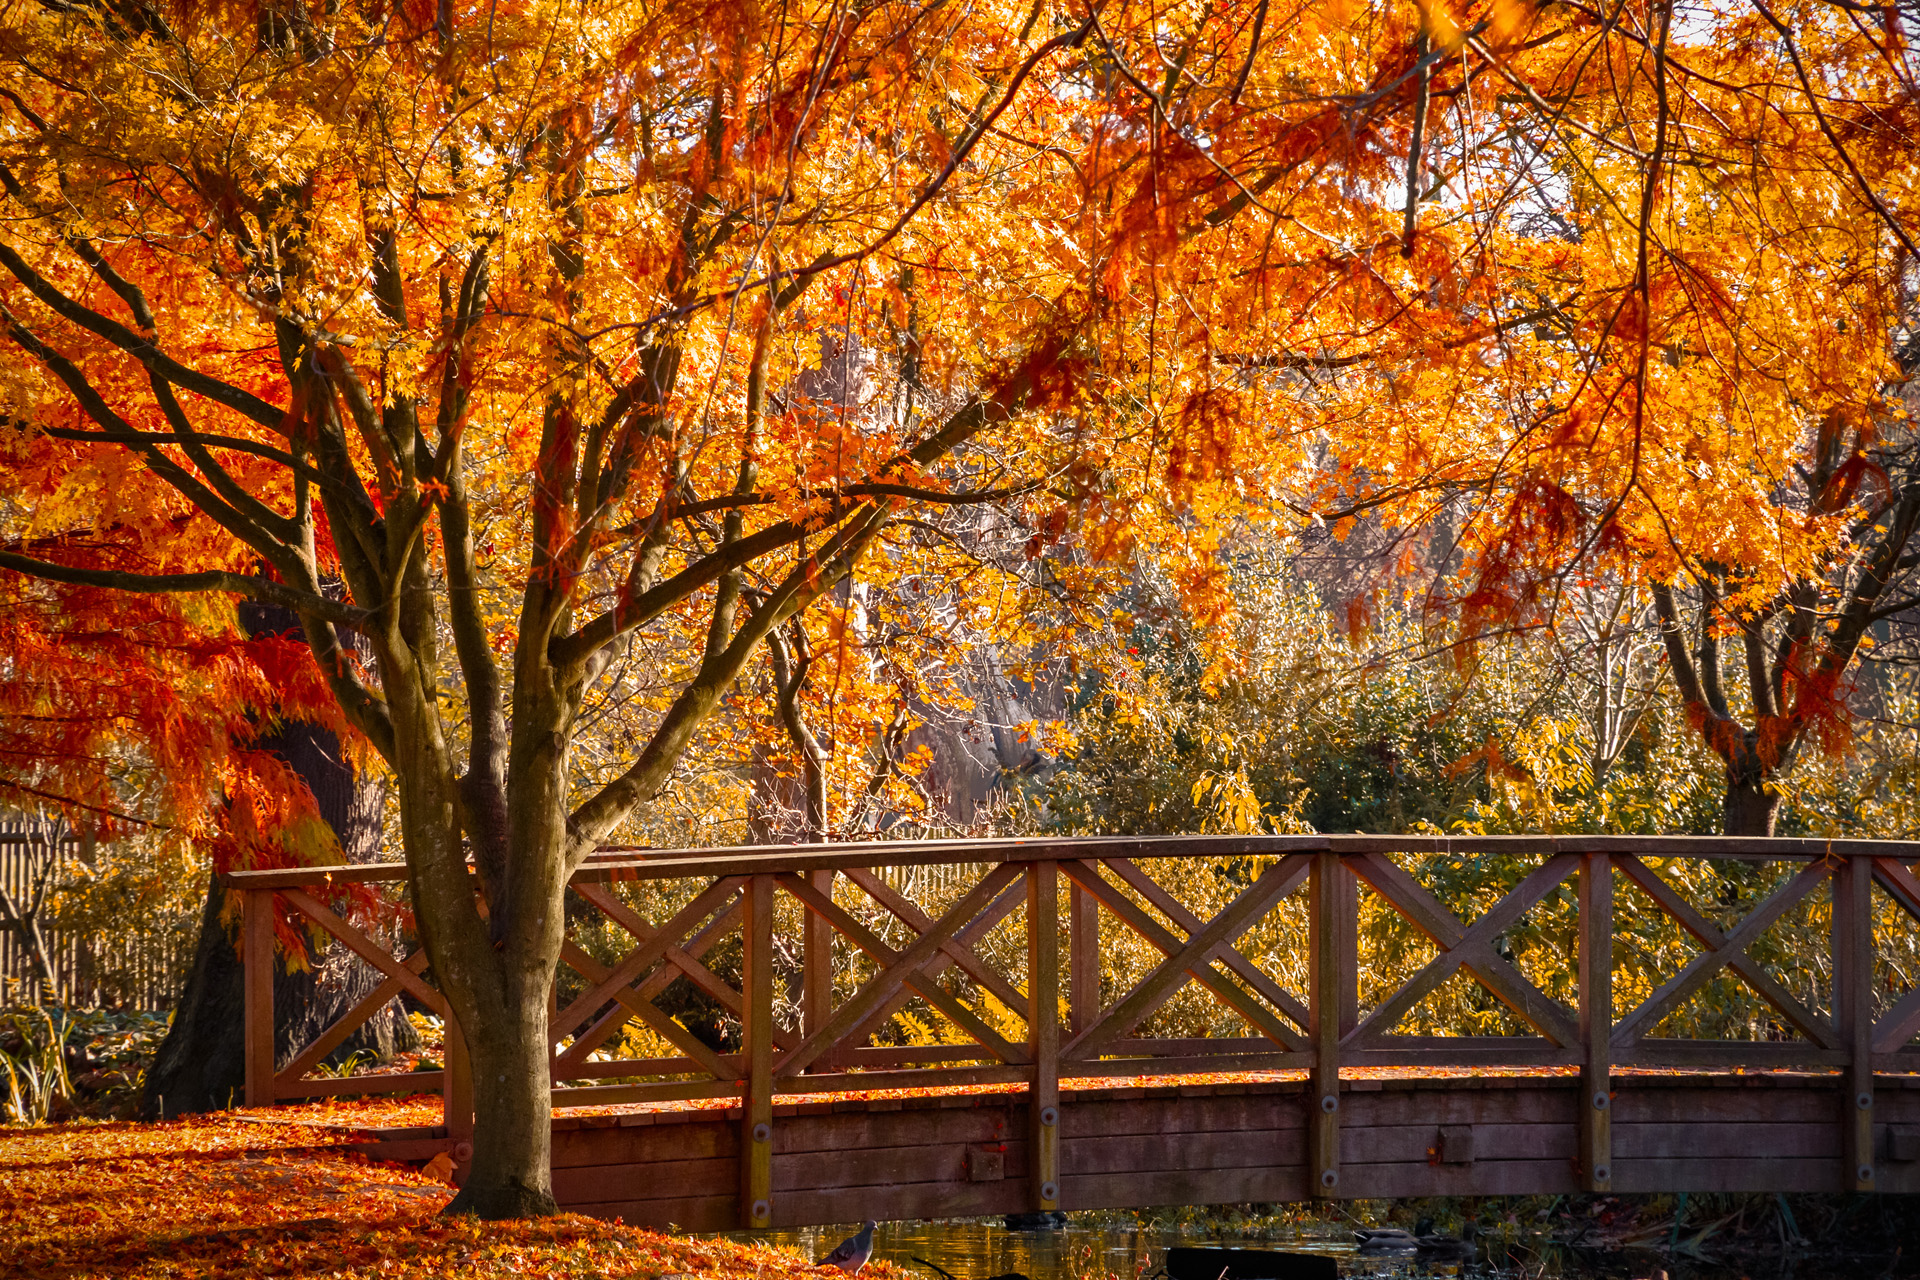 Wooden bridge in bushy park with autumn scene in London